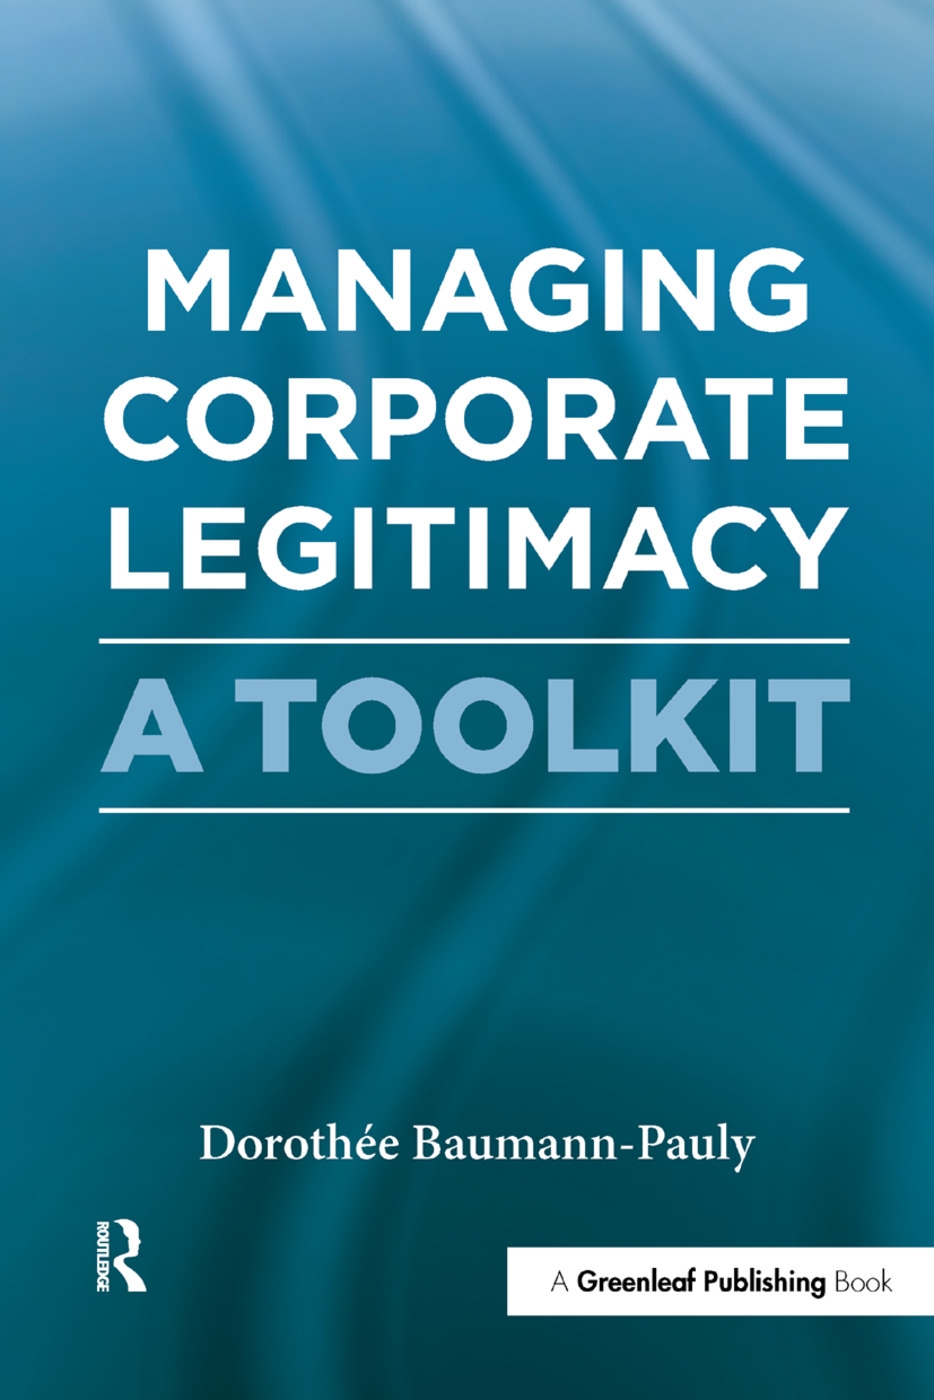 Managing Corporate Legitimacy: A Toolkit